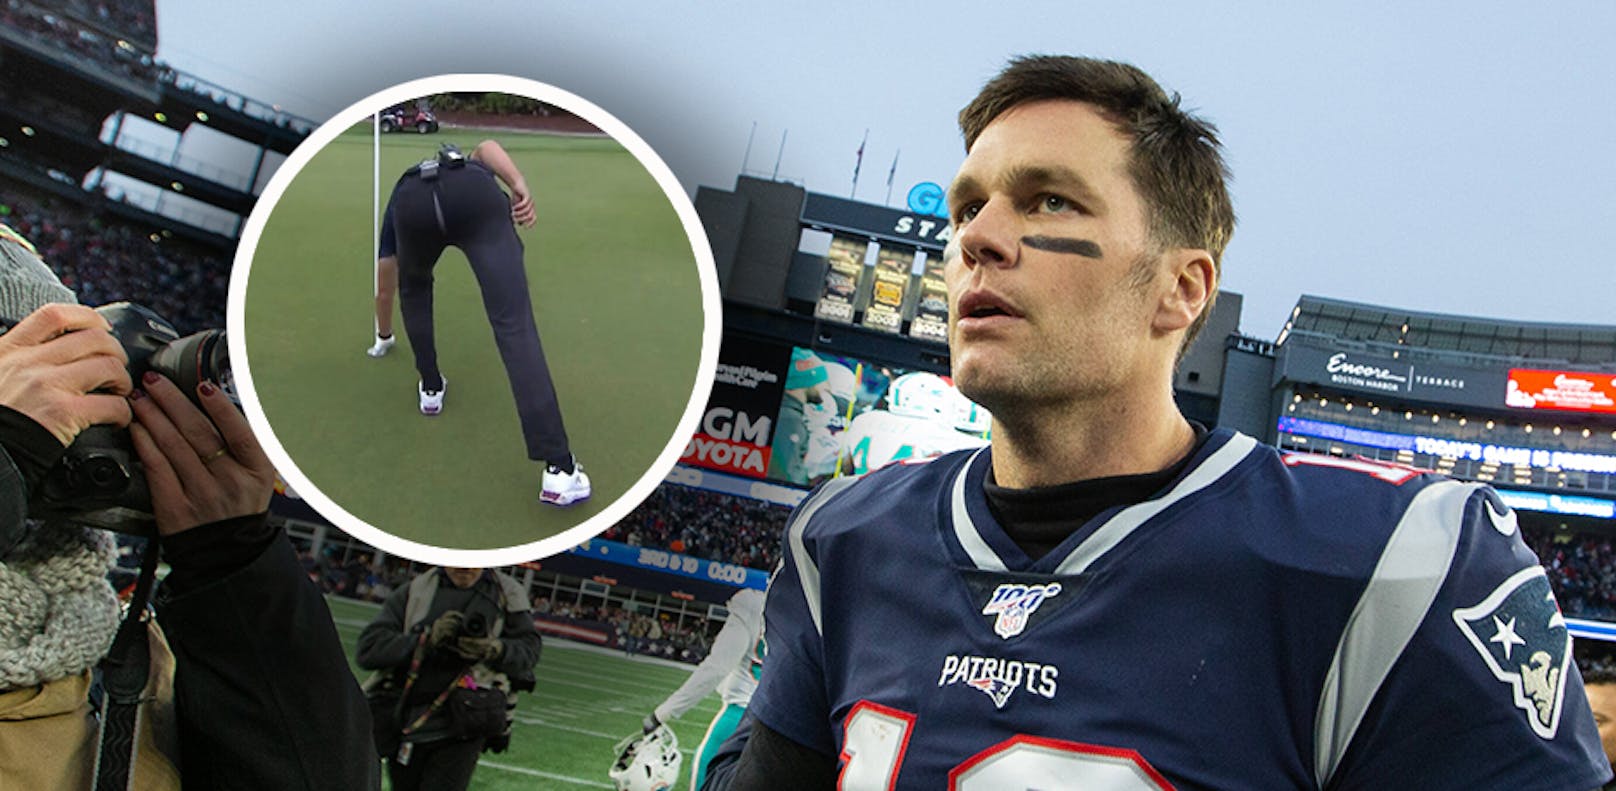 NFL-Star Tom Brady sorgt beim Golfen für Lacher.